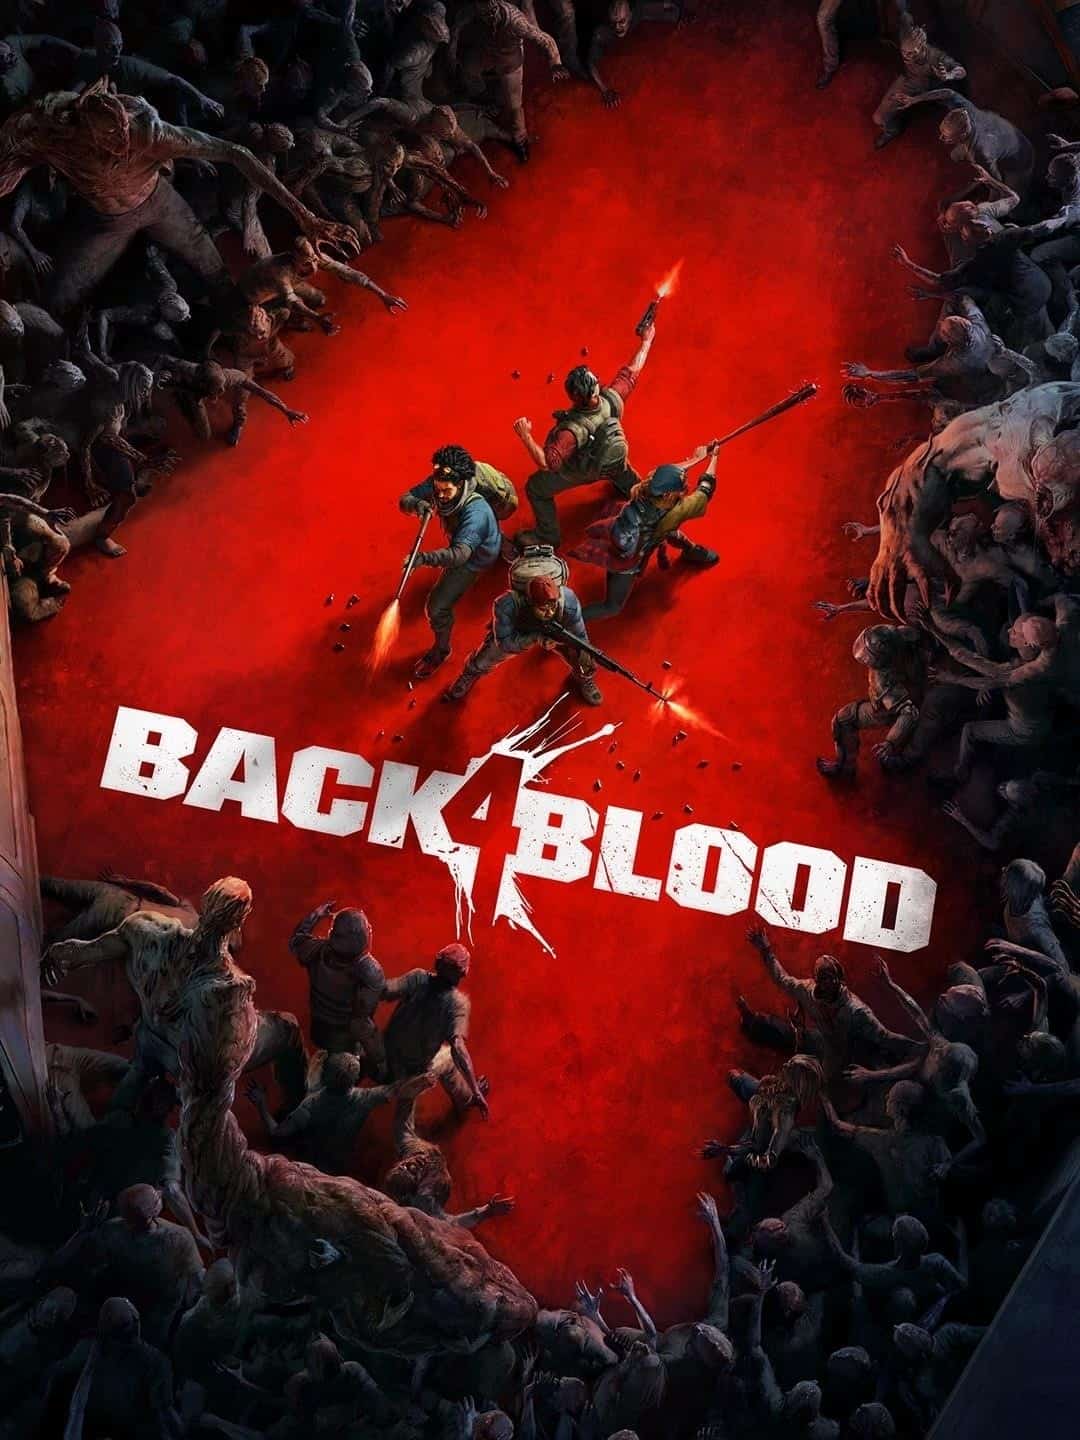 Is Back 4 Blood cross platform/crossplay? - Gamepur